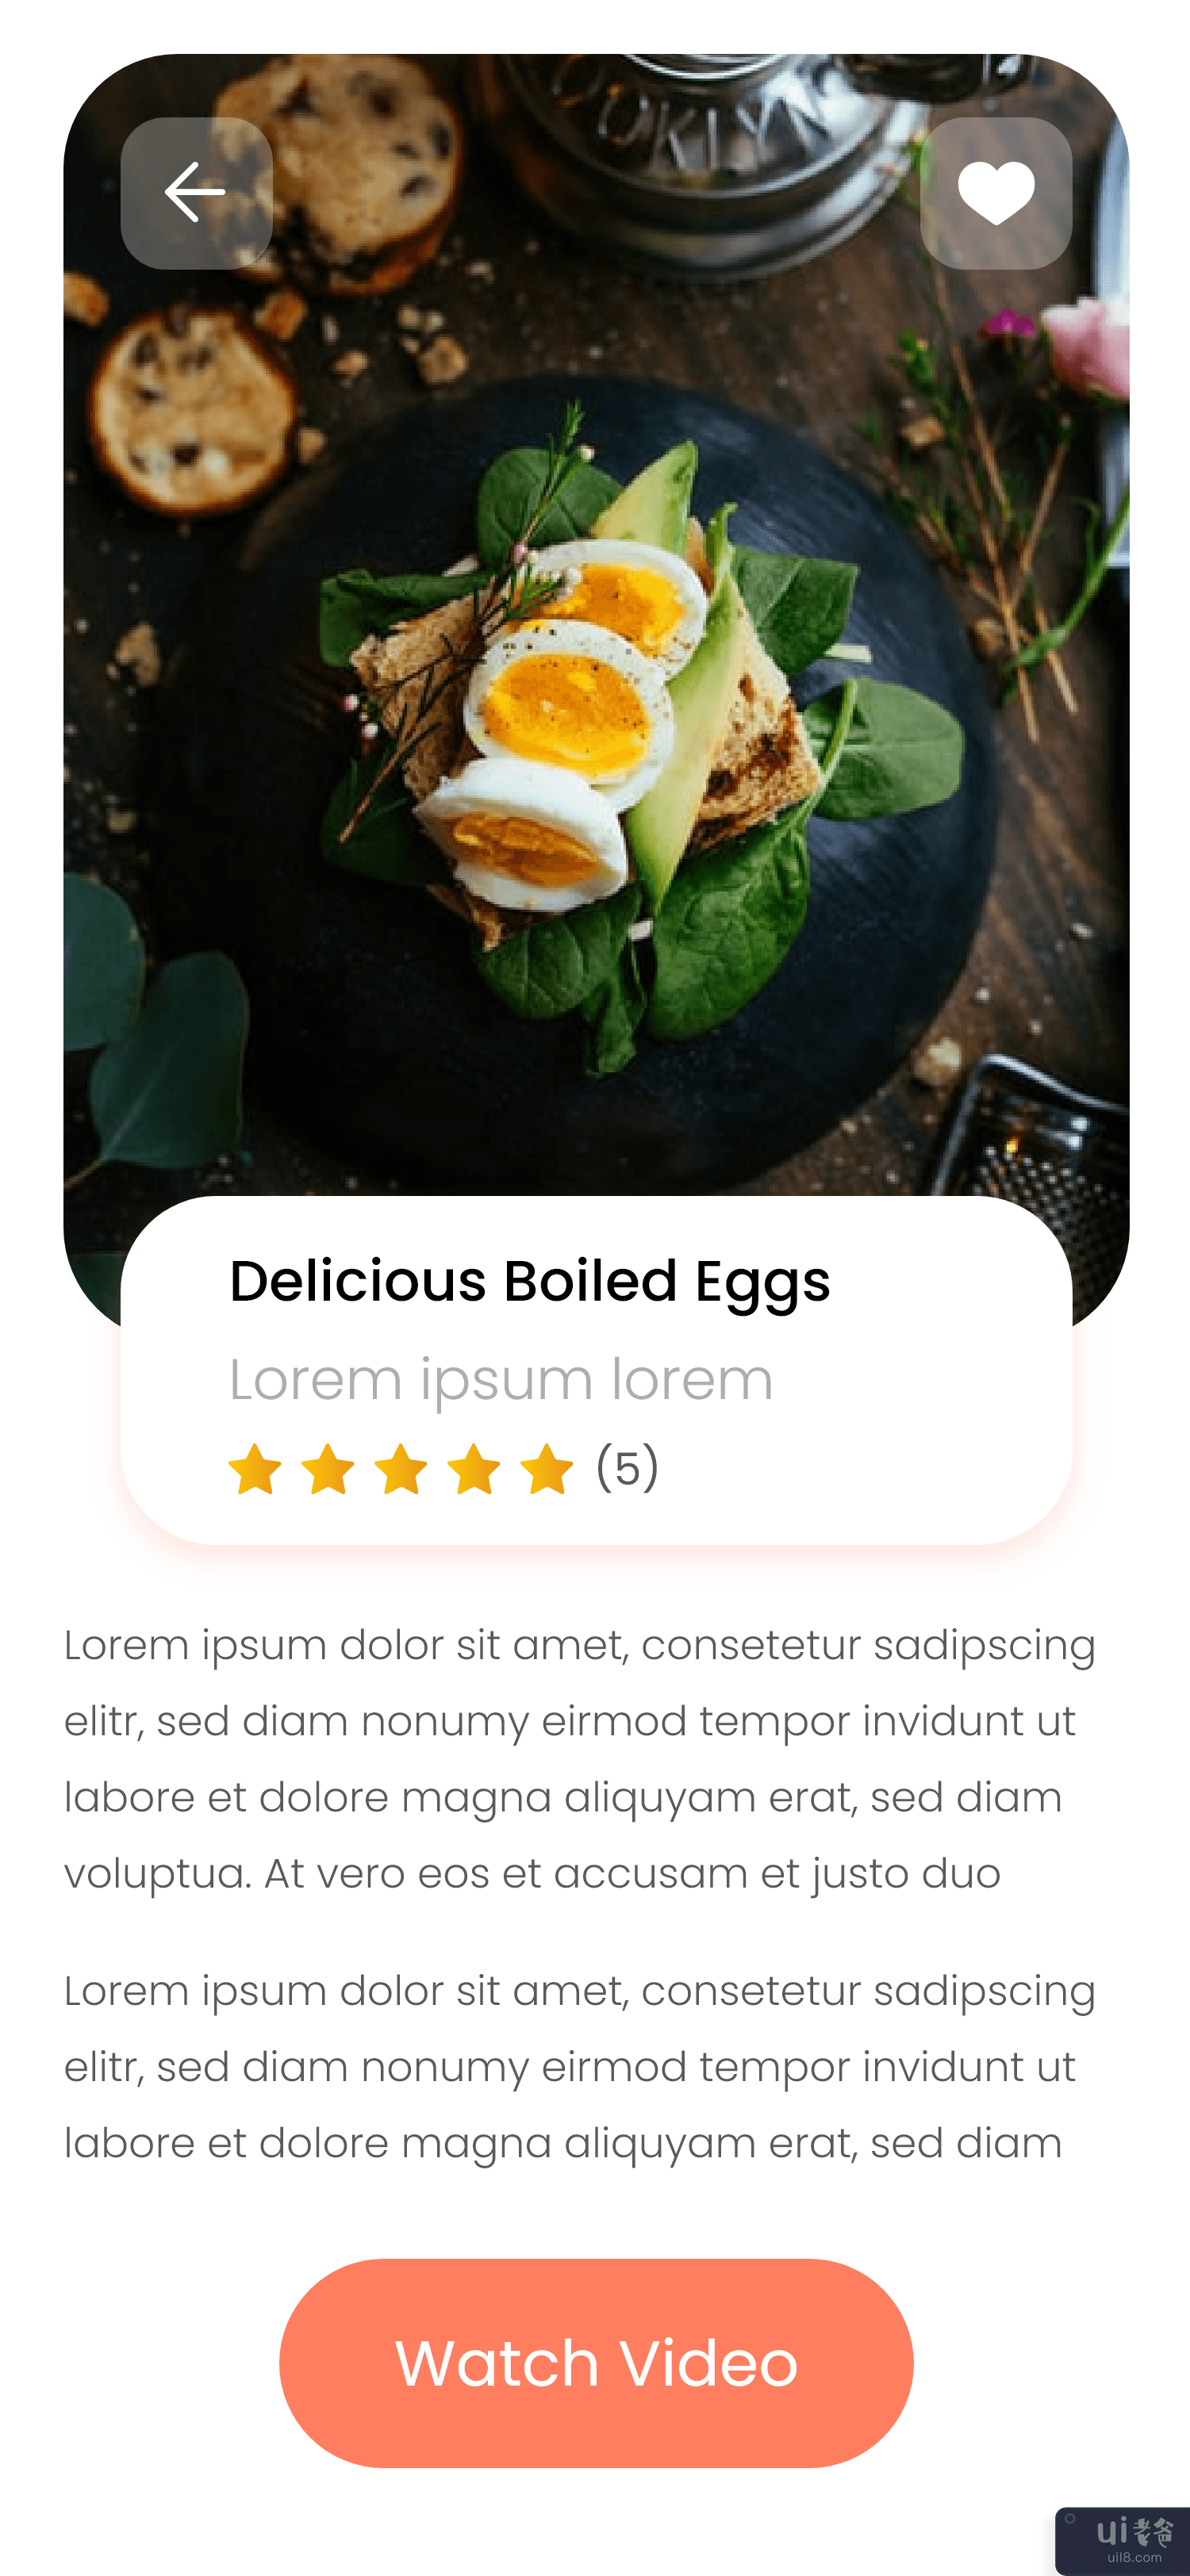 早餐食谱应用程序用户界面(Breakfast Recipes App UI)插图1